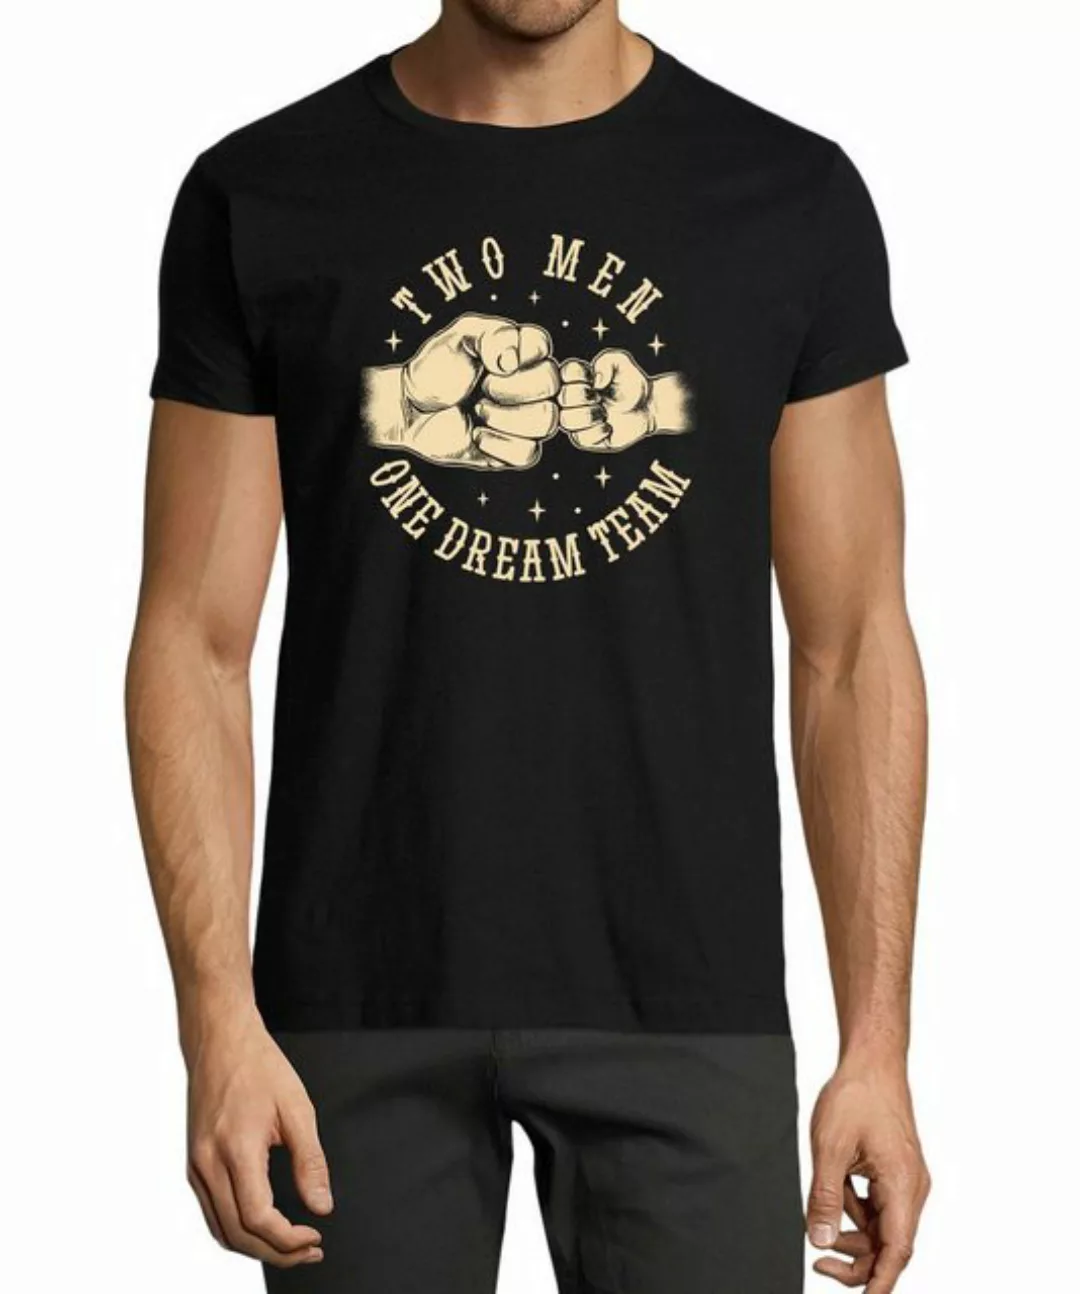 MyDesign24 T-Shirt Herren Print Shirt - Vater mit Sohn Dream Team Baumwolls günstig online kaufen